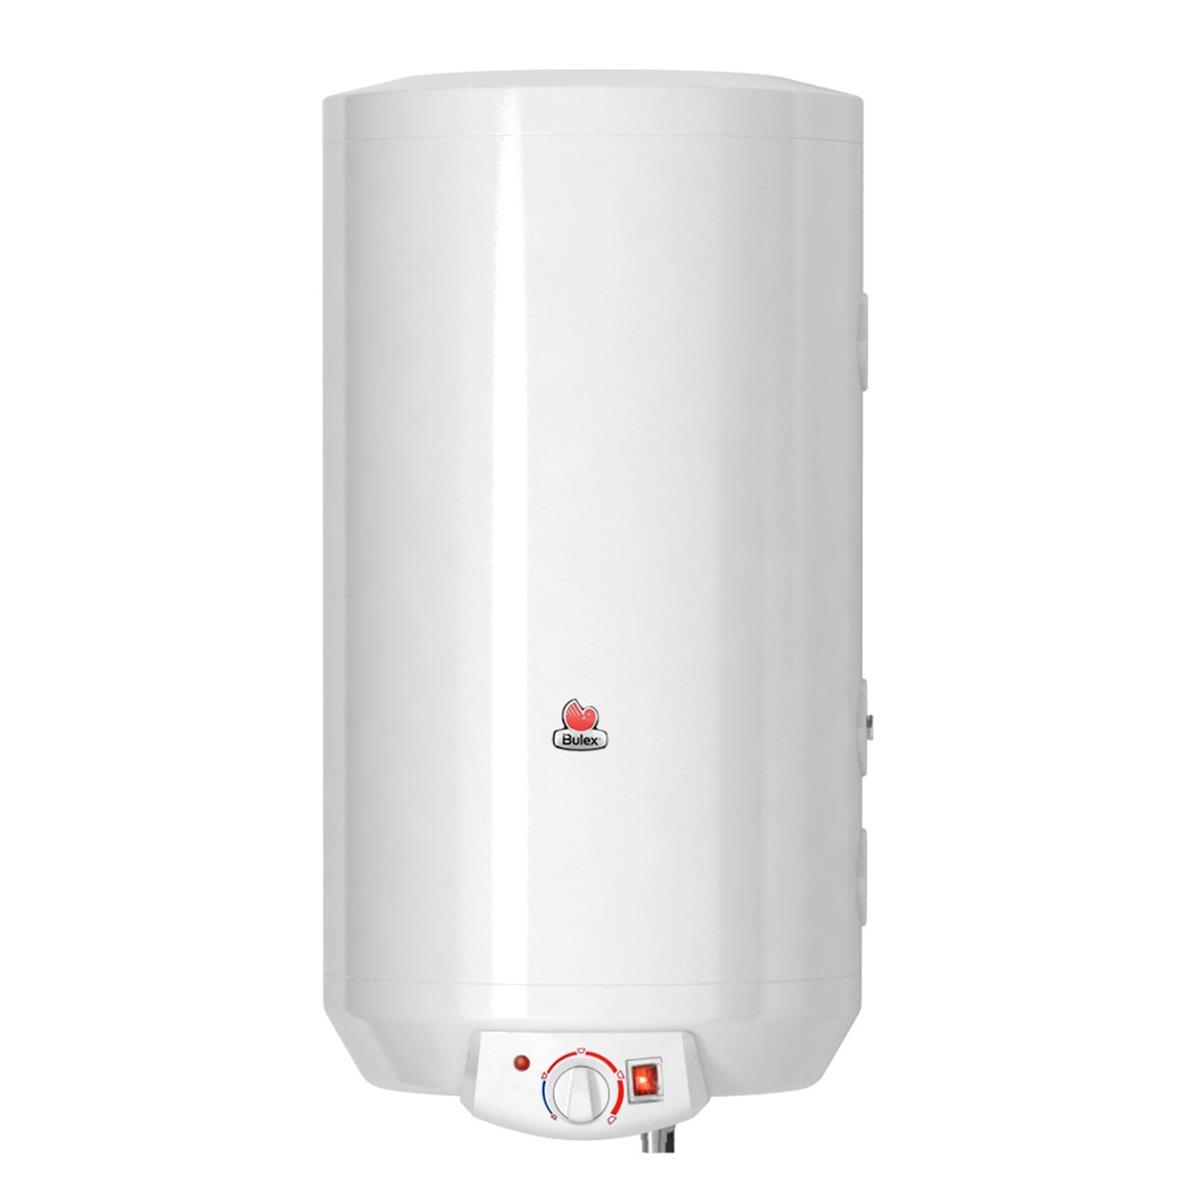 Bulex cv boiler 150L elektrische weerstand (1/23) (2000 W) voorzien met een thermostaat. Sanitaire voeler of aquastaat in optie.Anti-elektrolyse mof en veiligheidsgroep niet inbegrepen. Sanitaire aansluiting 1/2